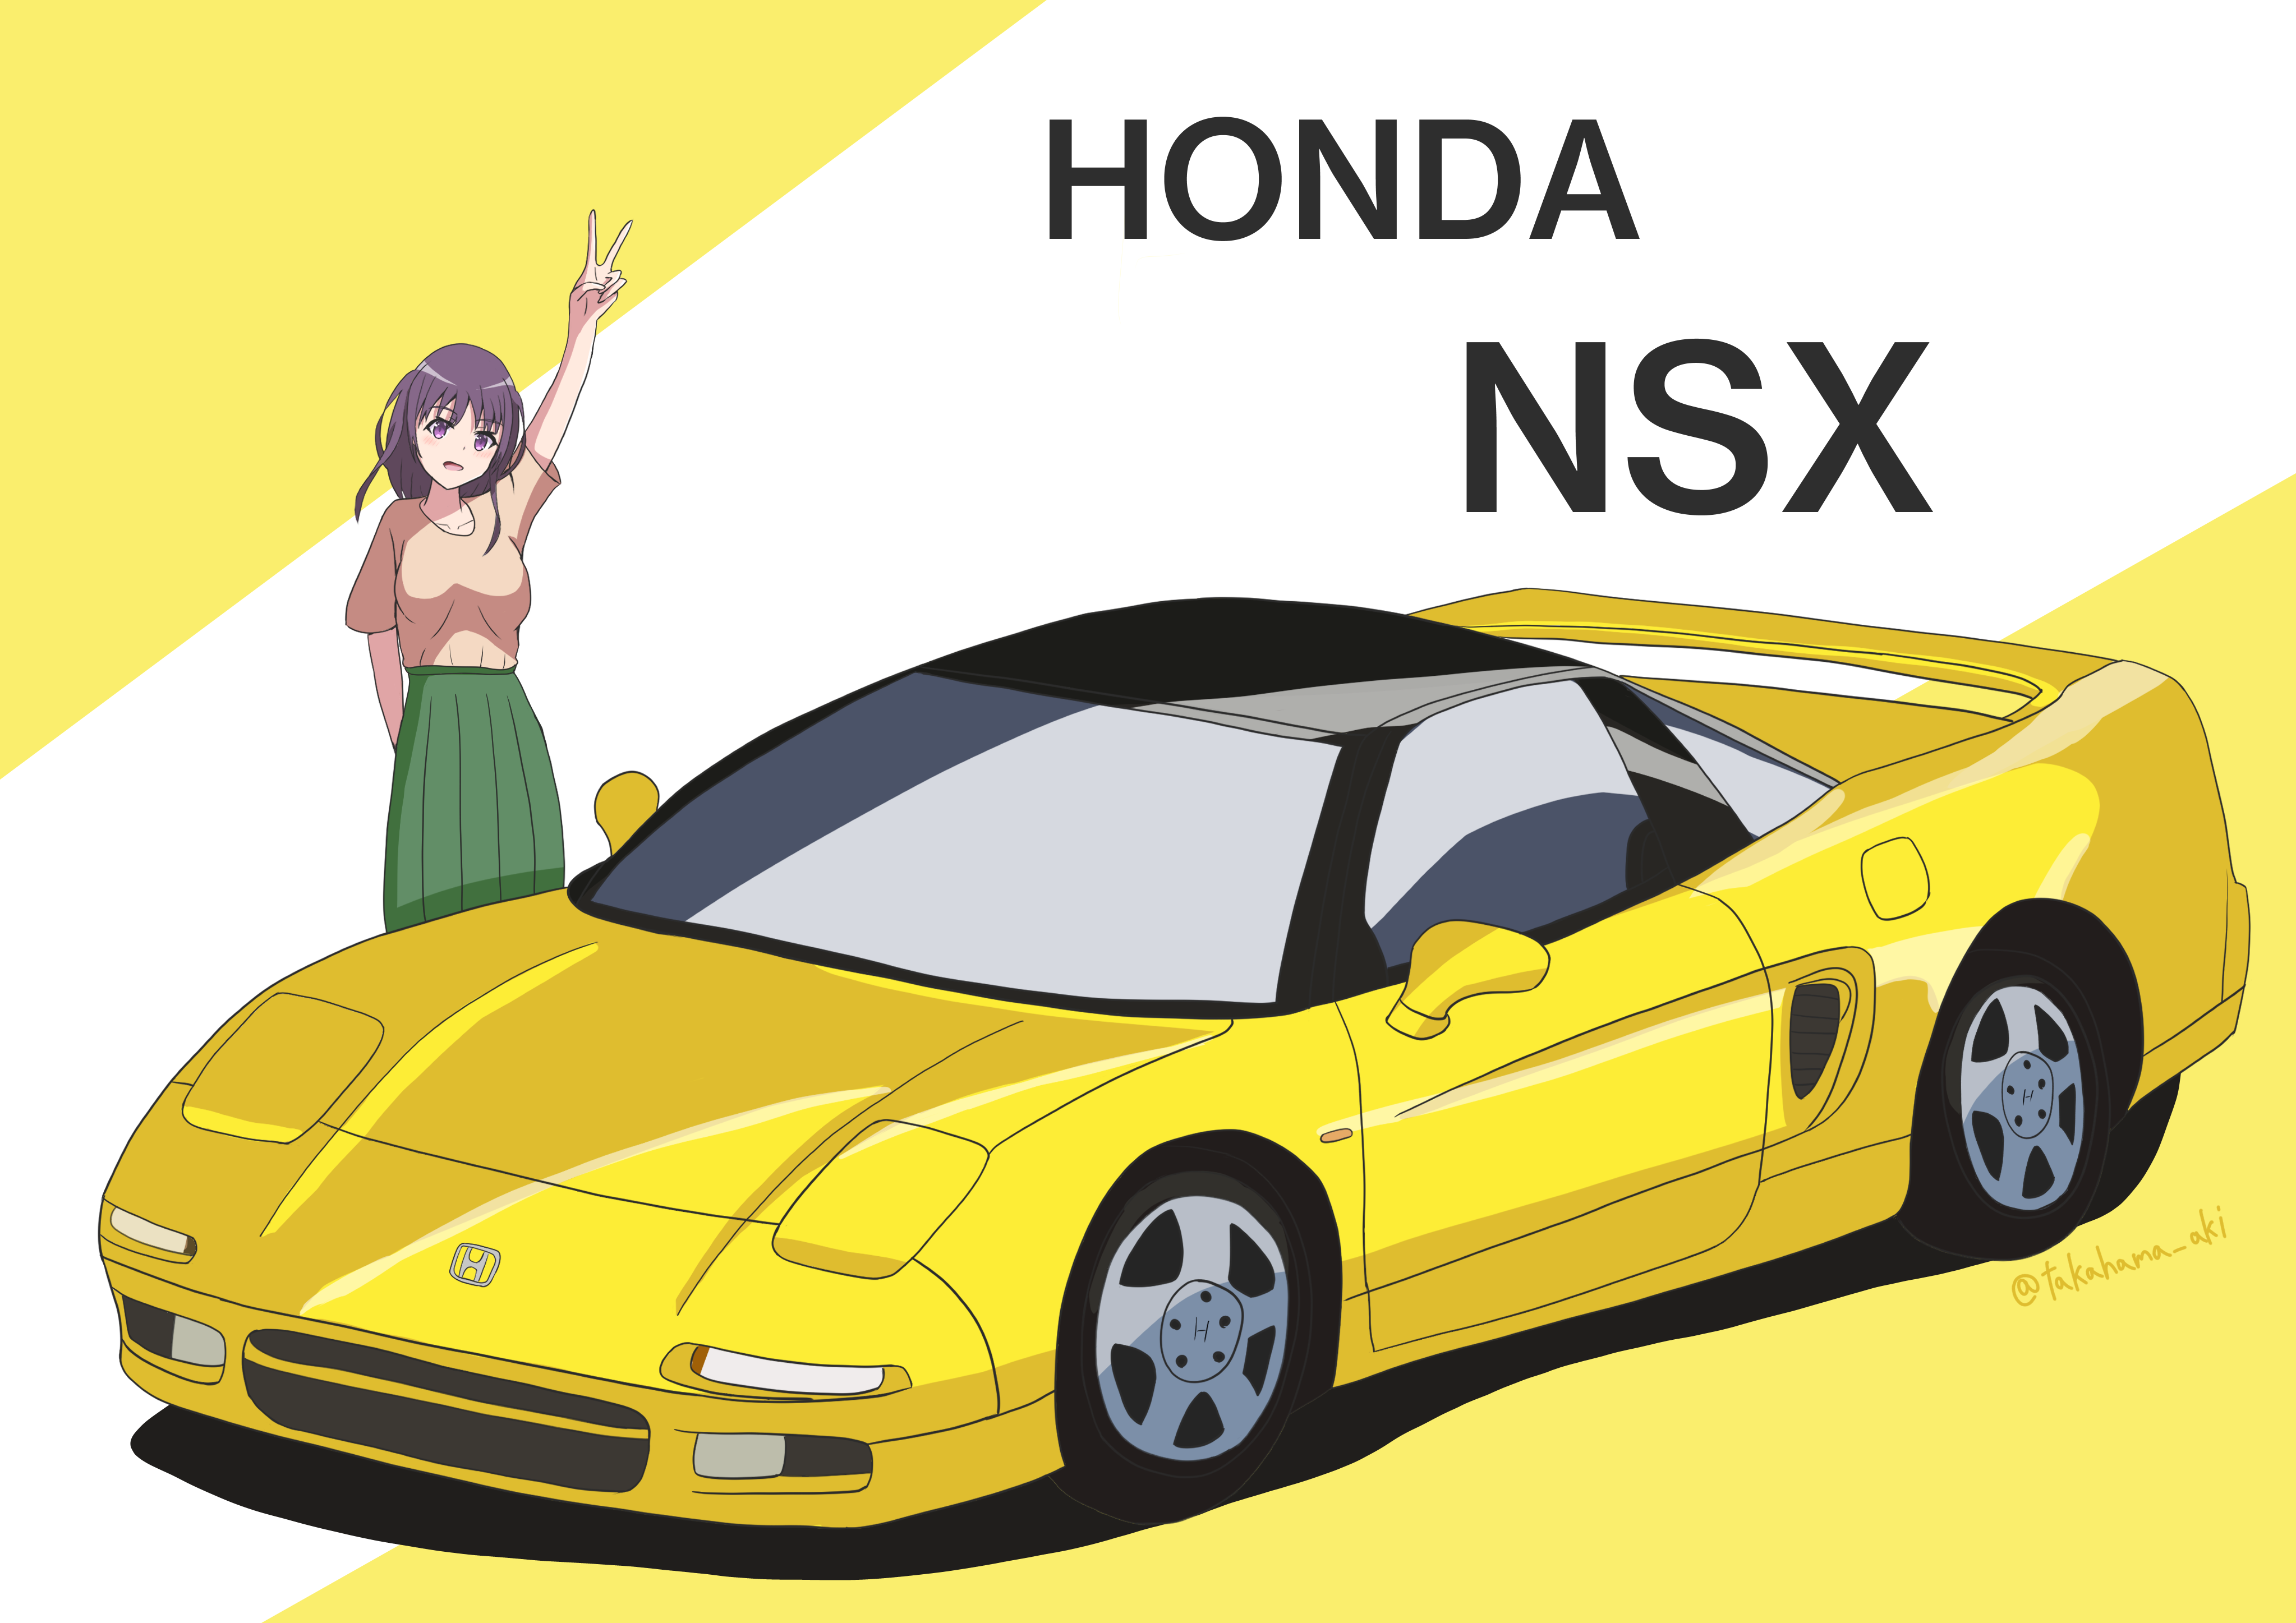 高浜あき 90年代スポーツカー第一弾 ホンダ Nsx描きました Nsxはスポーツカーよりスーパーカーと言うほうがふさわしいですね ホンダ Nsx イラスト イラスト初心者 T Co Sxrbqupu45 Twitter